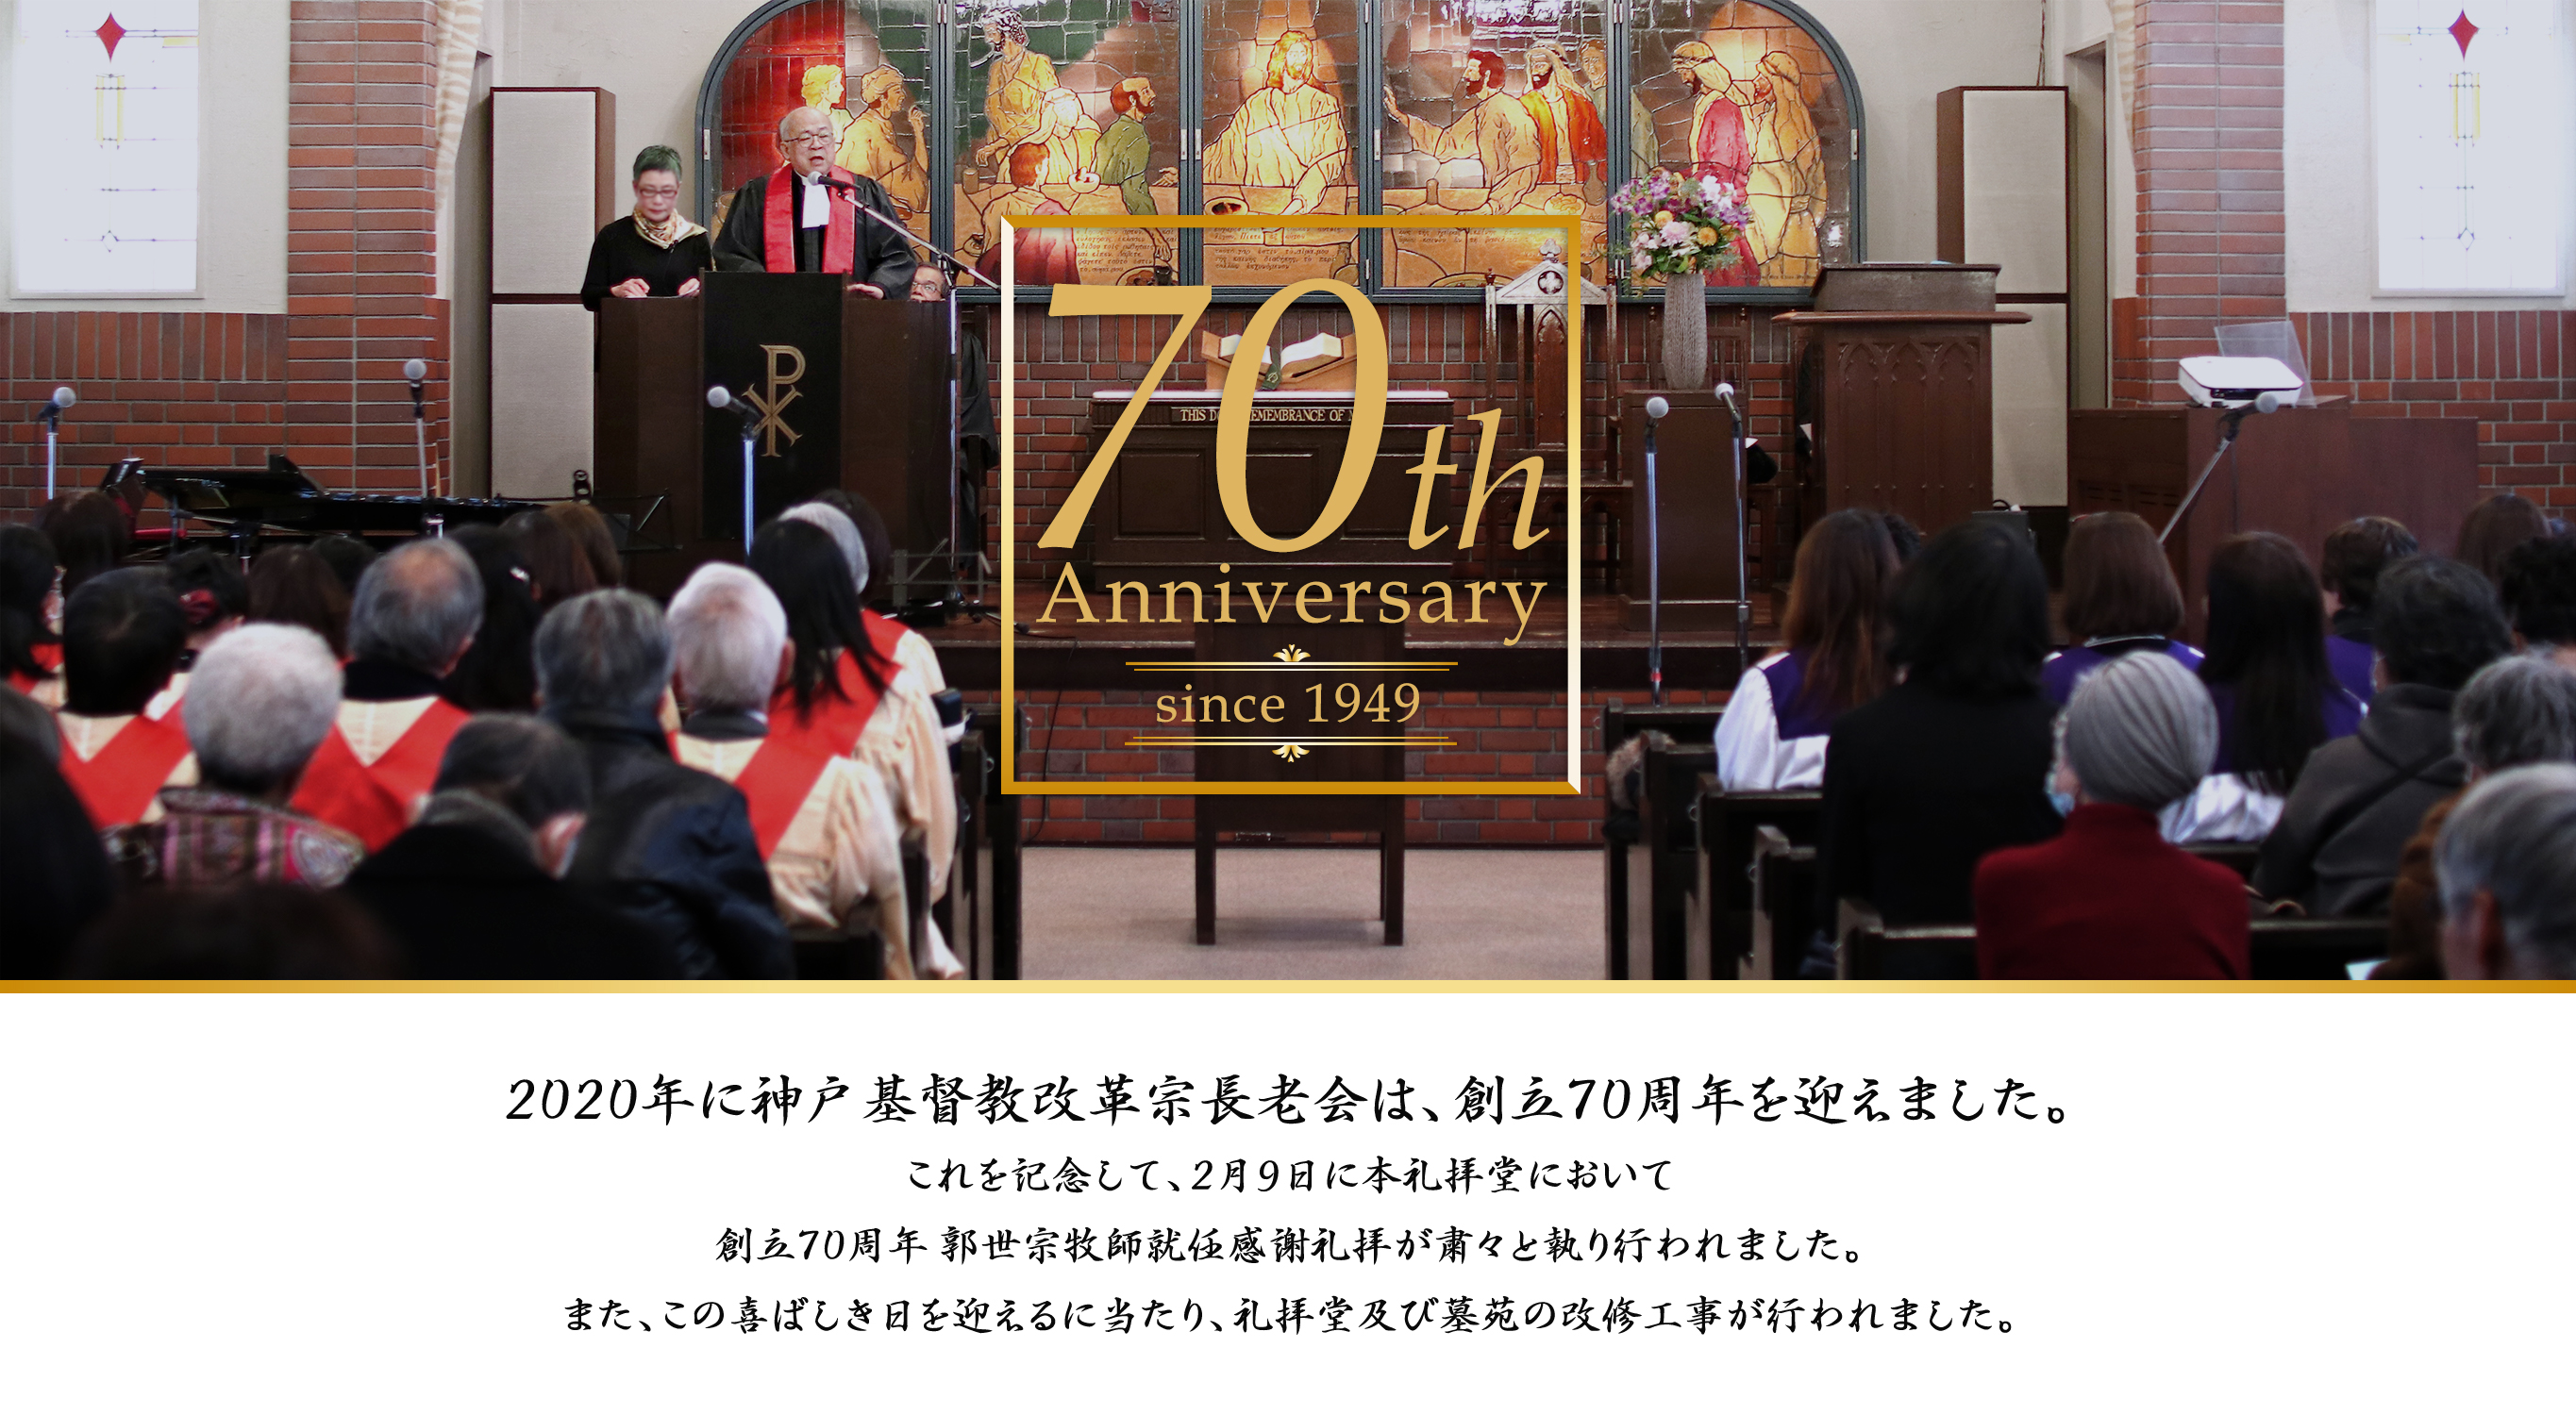 創立70周年 神戸基督教改革宗長老会